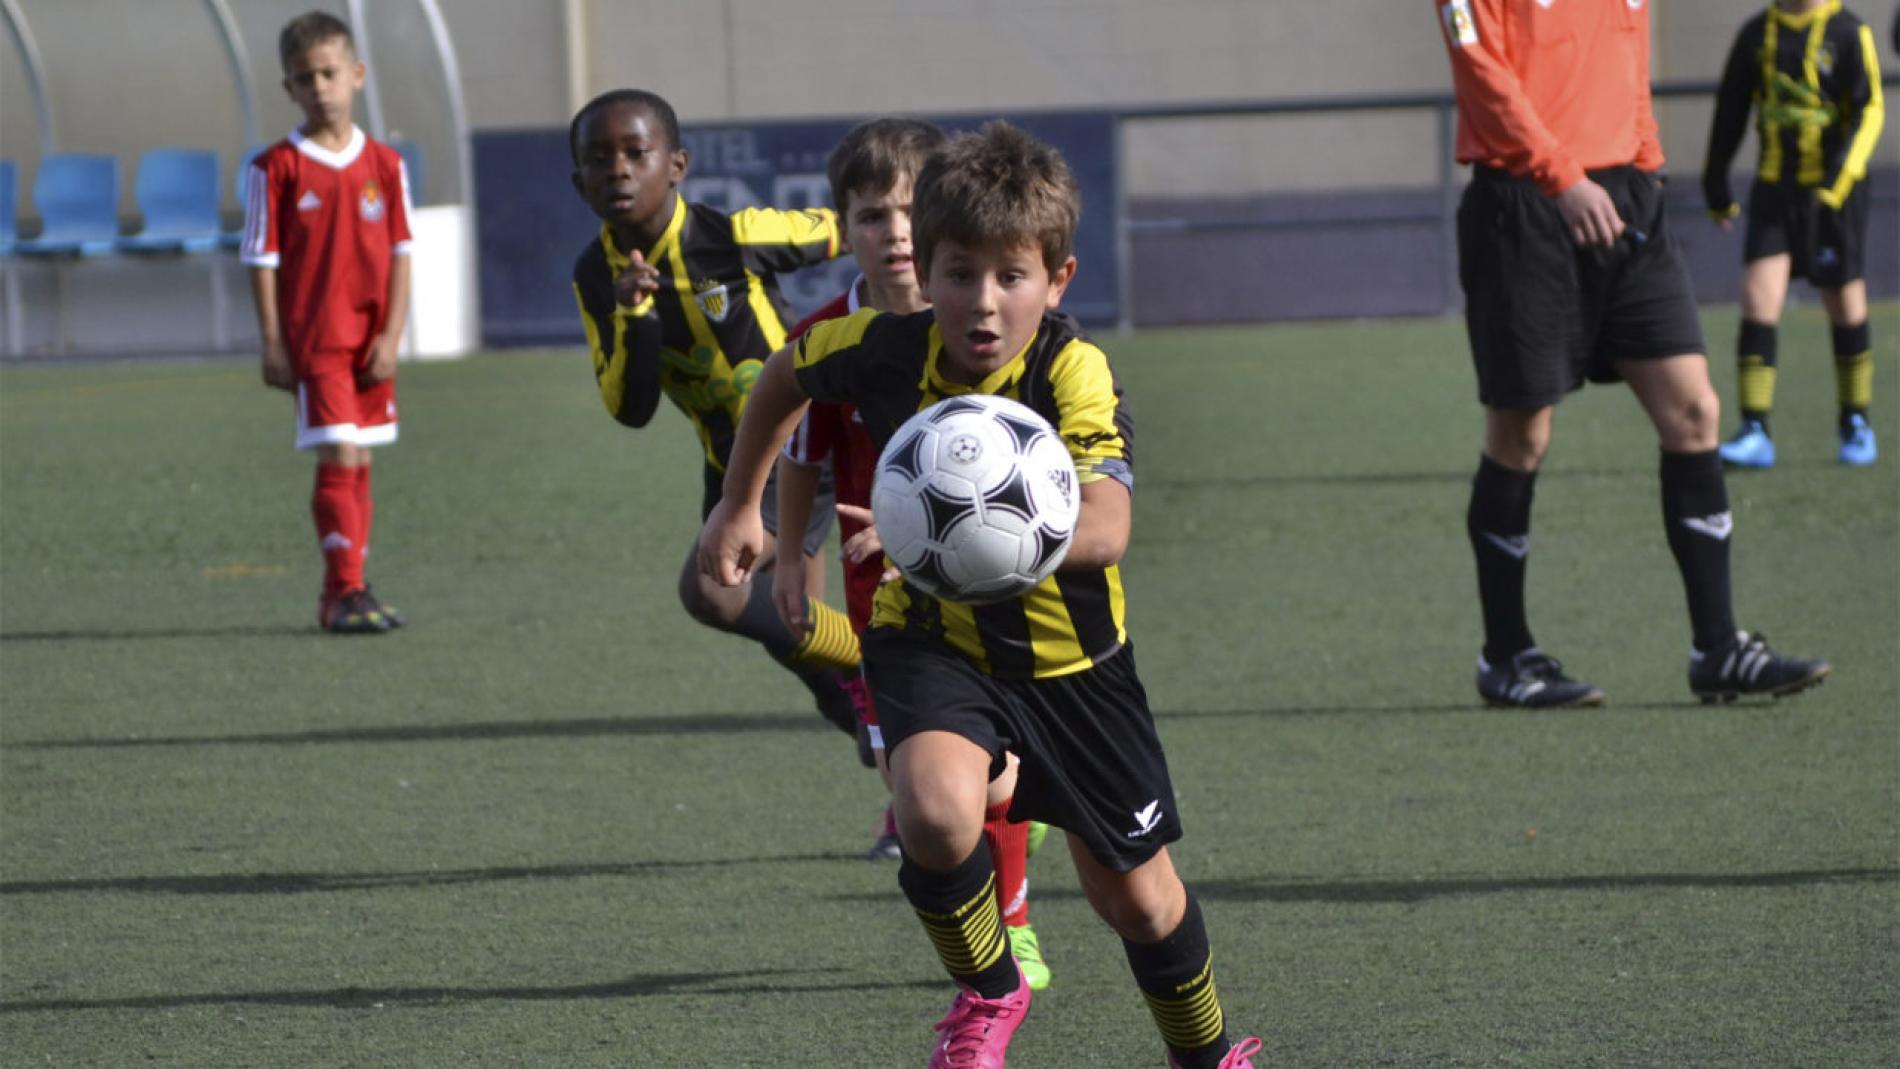 Juego De Fútbol De Observación Del Niño Foto de archivo - Imagen